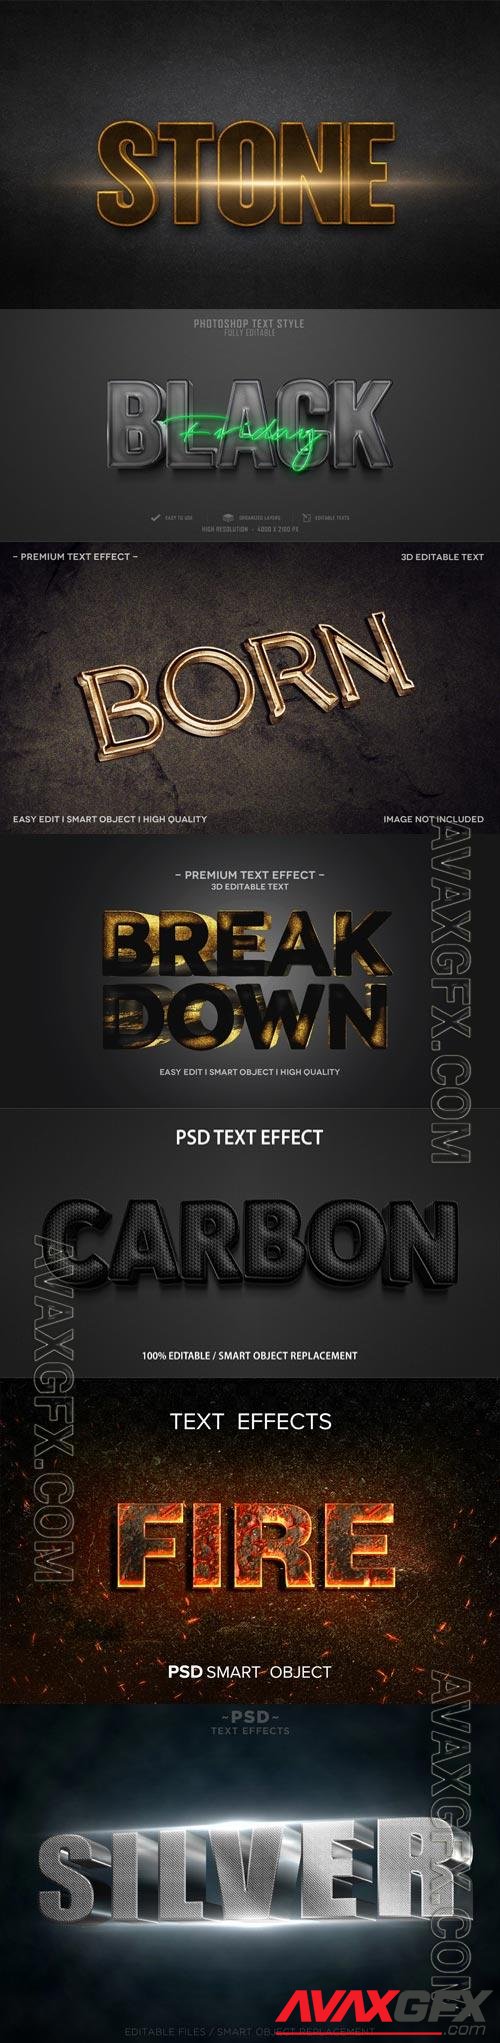 Psd text effect set vol 31